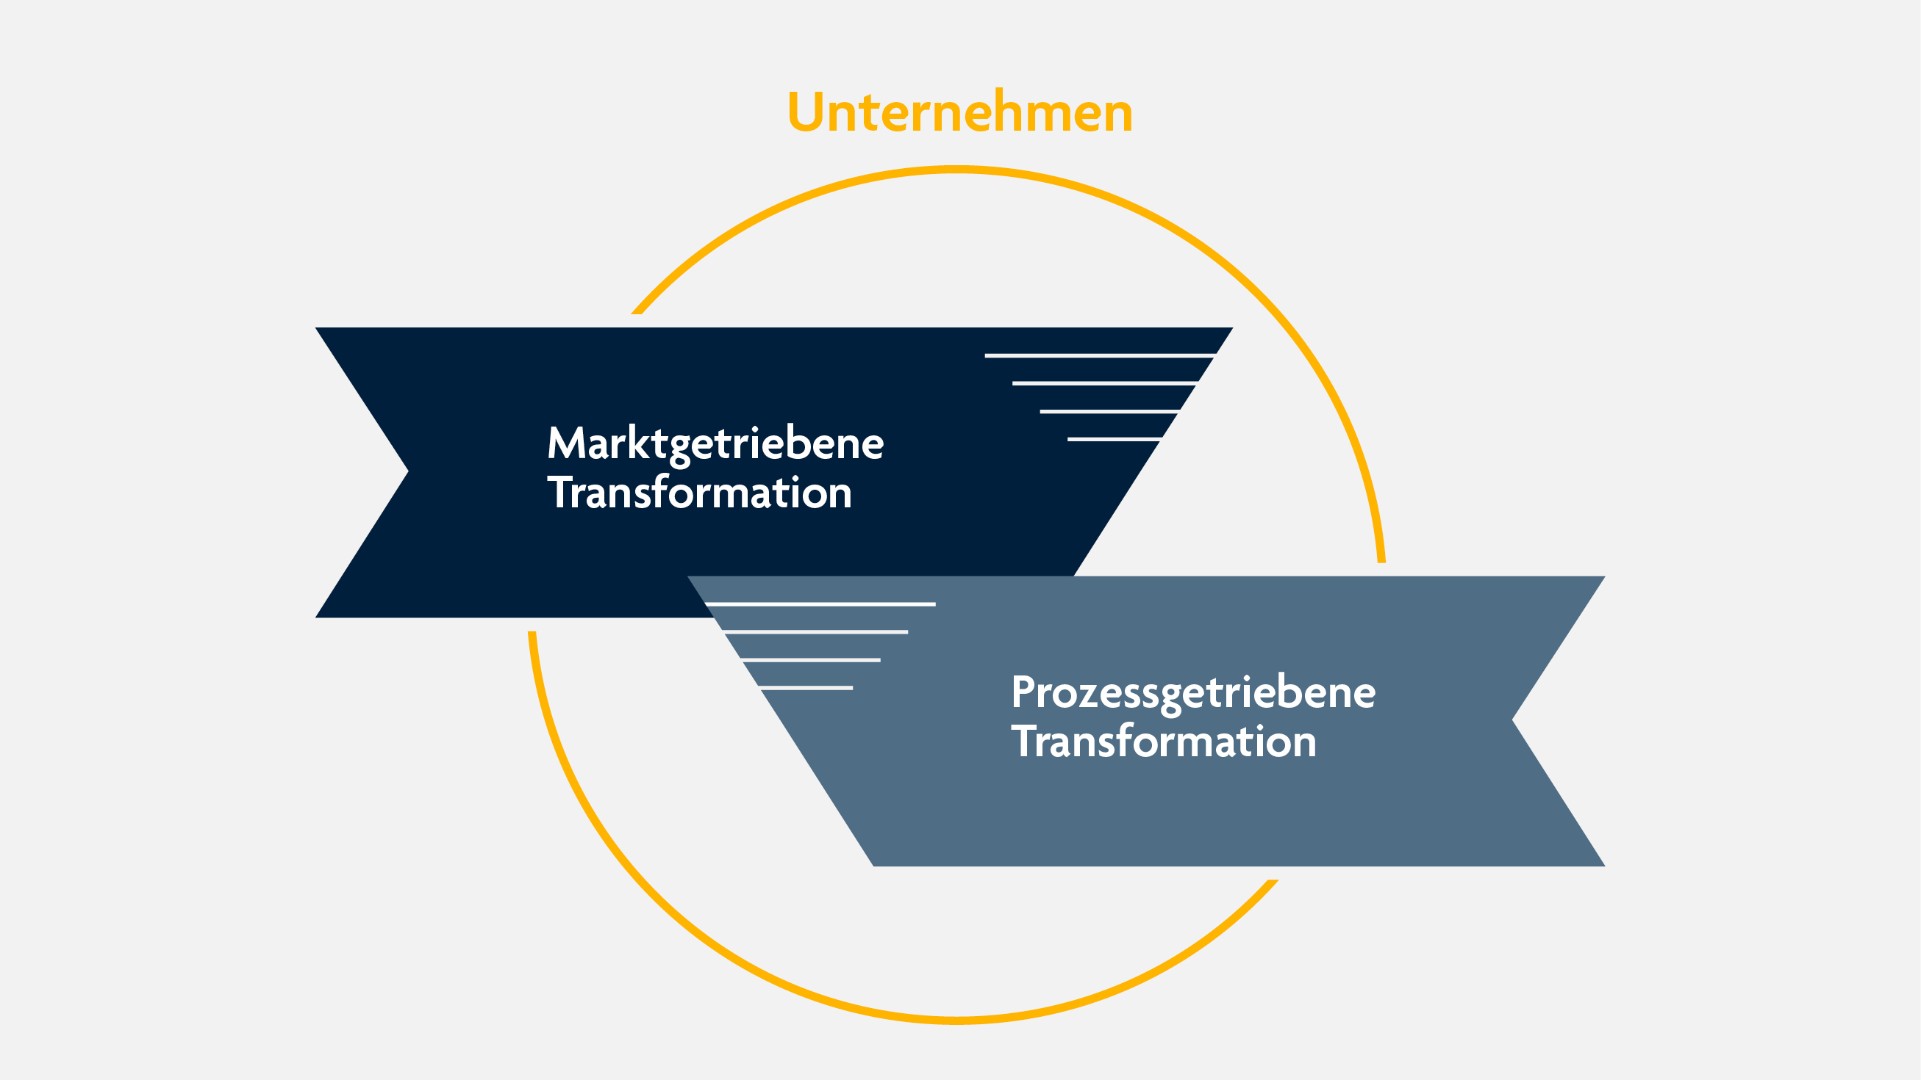 Ein Kreis zeigt die beiden möglichen Transformationsrouten: Marktgetriebene und Prozessgetriebene Transformation